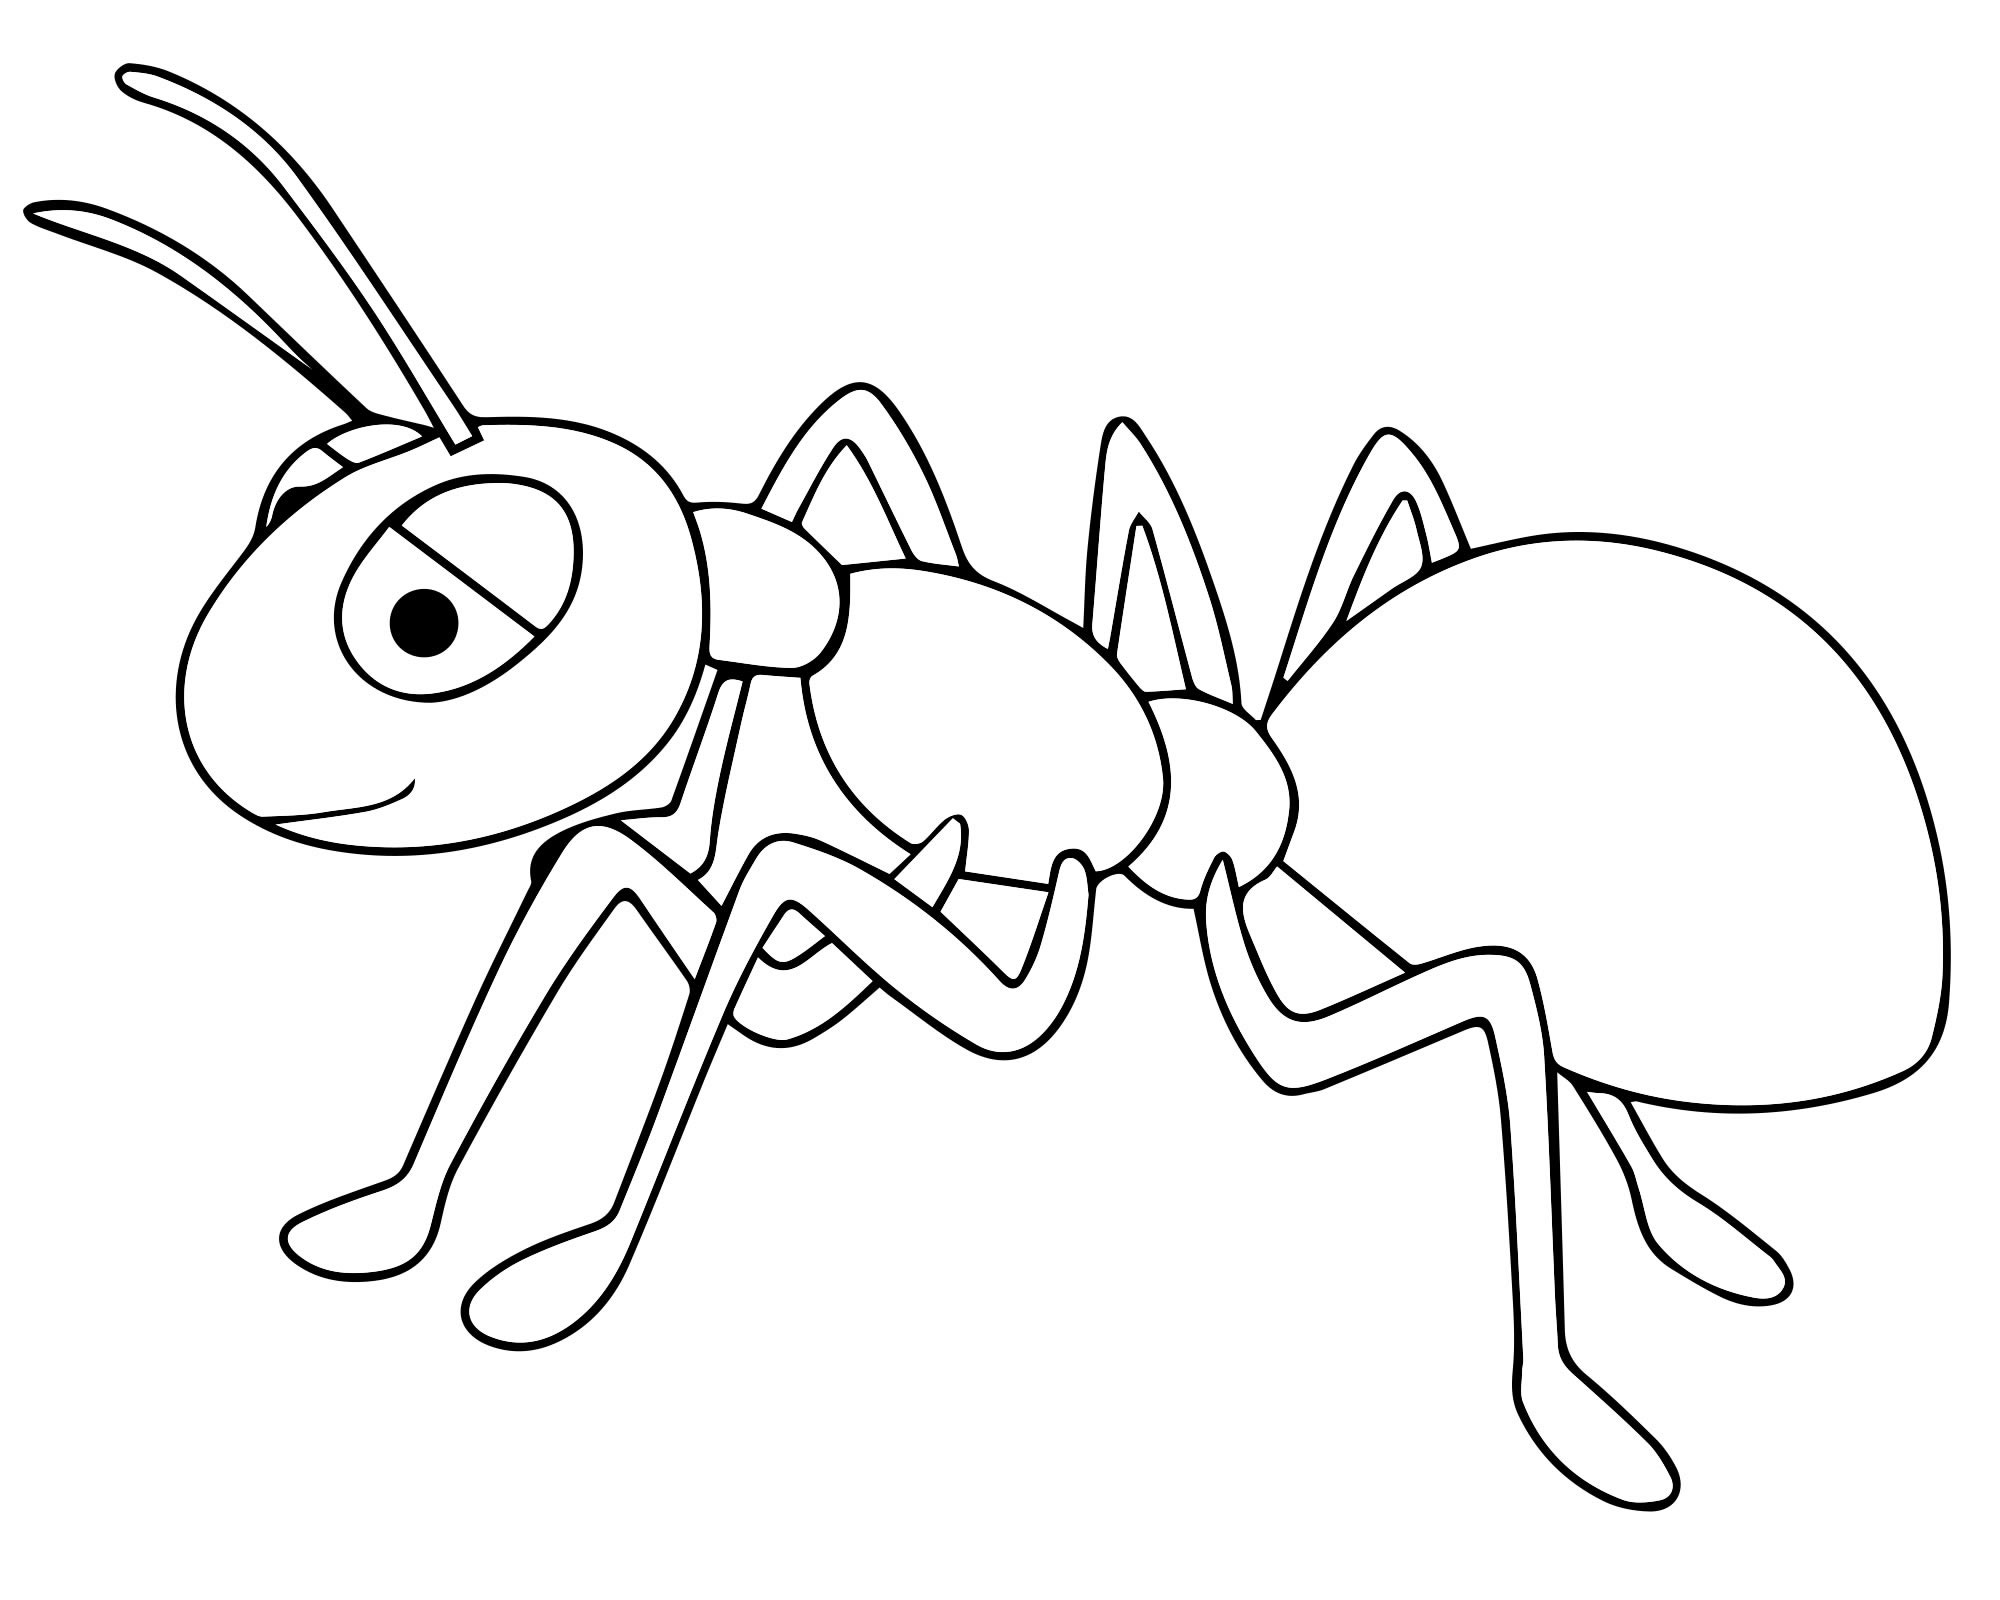 Иллюстрация к басне стрекоза и муравей